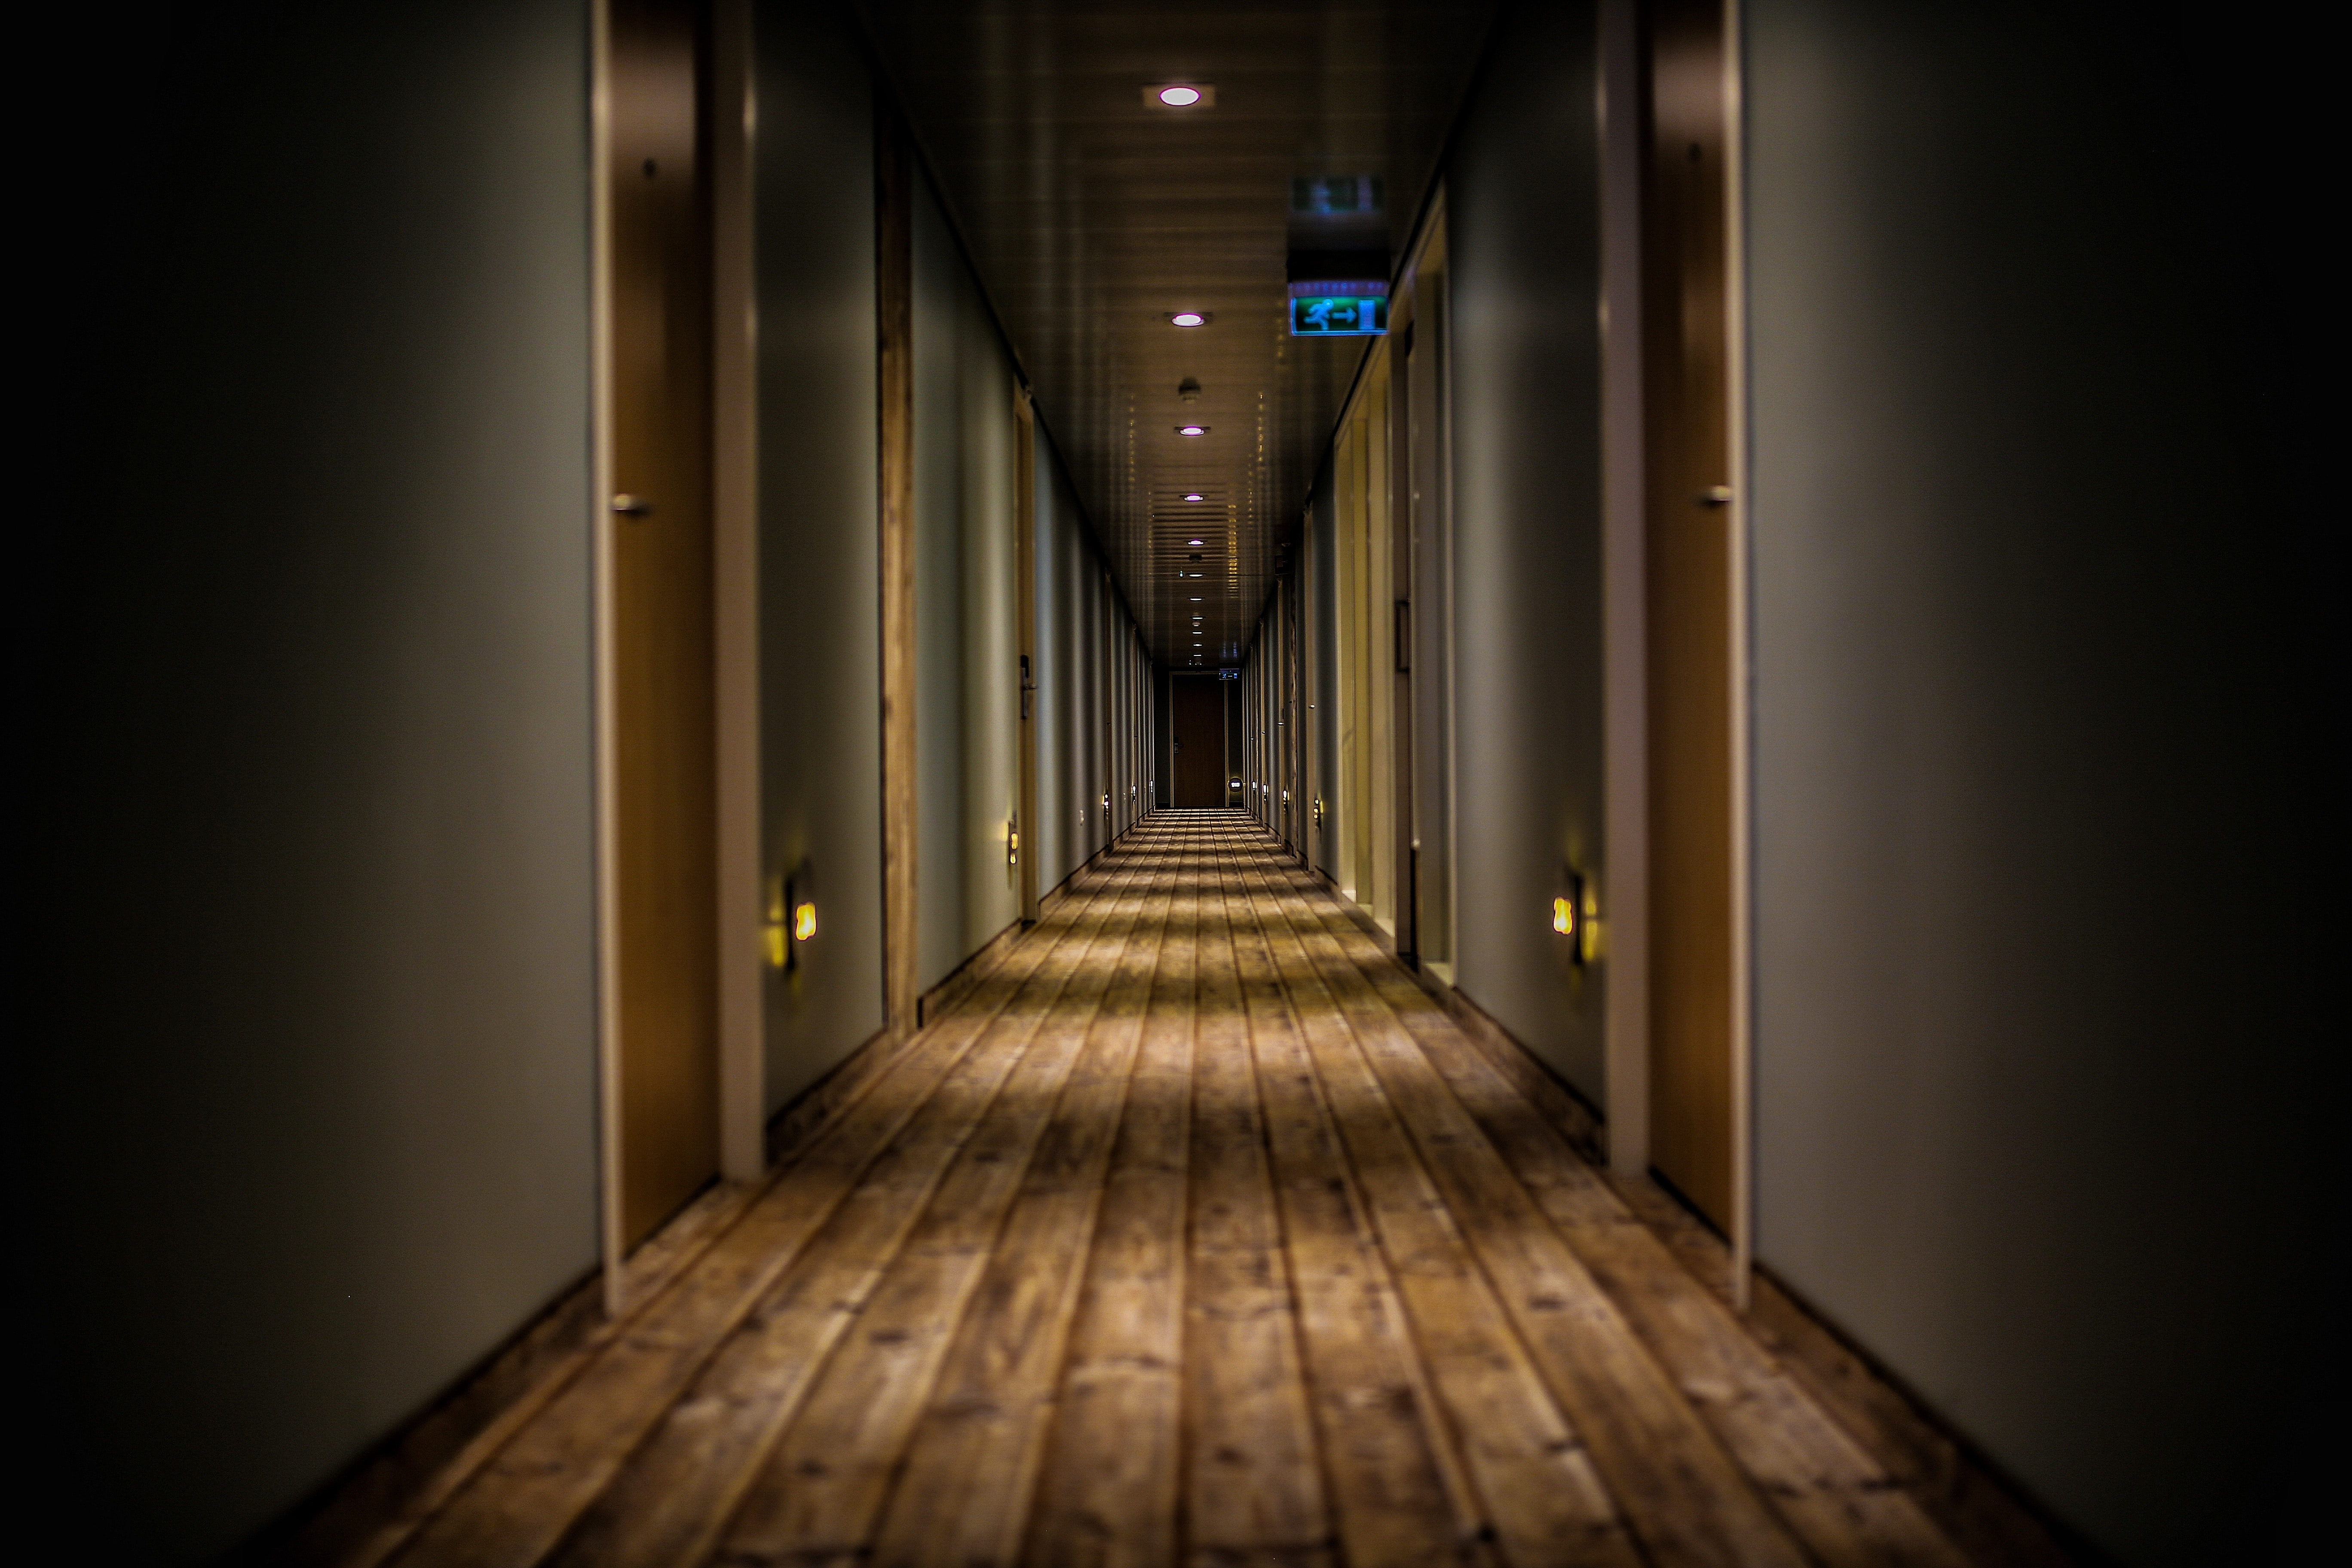 An eery hotel hallway